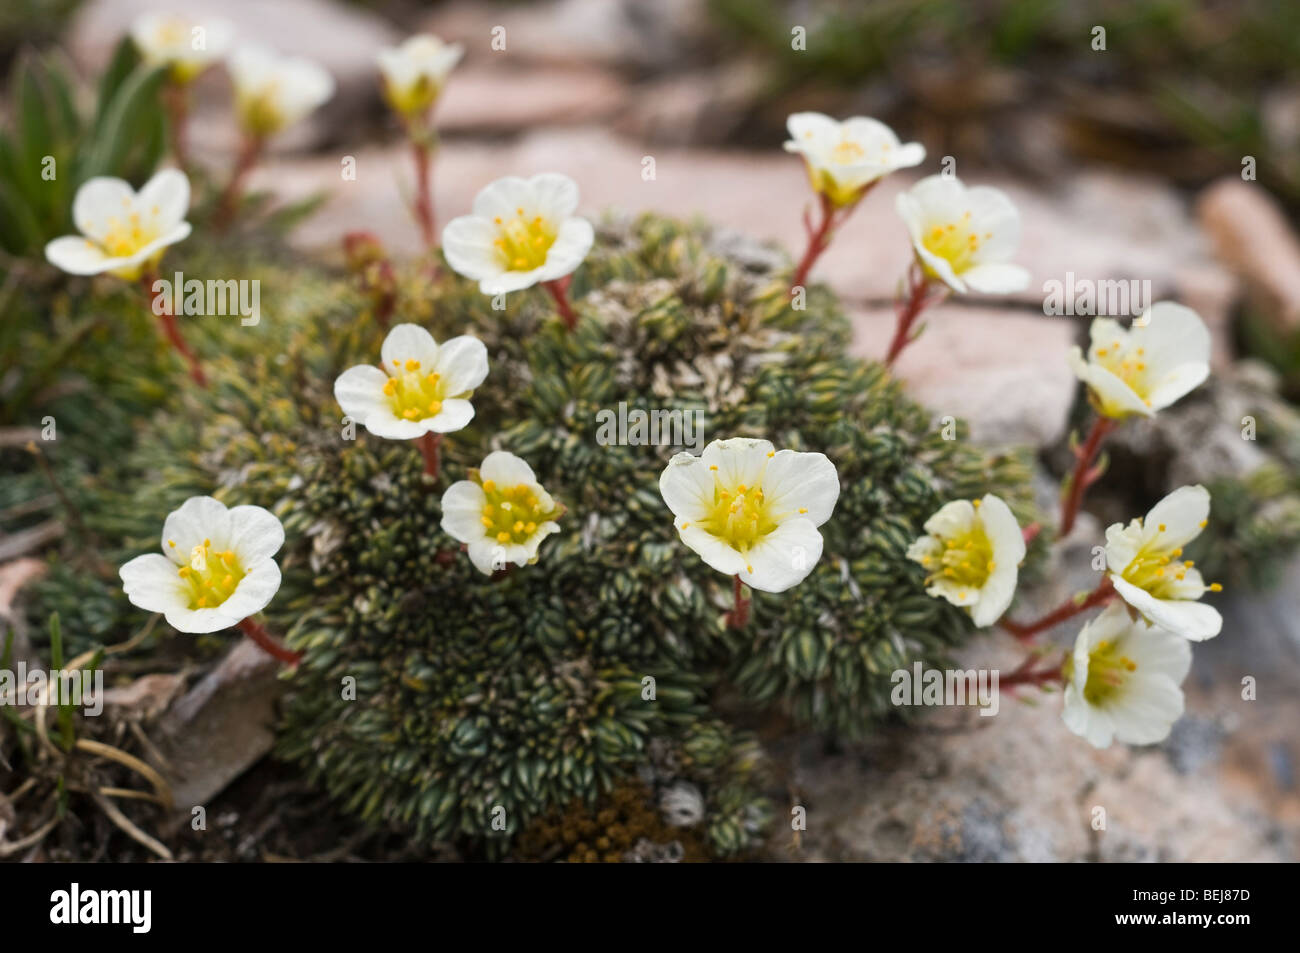 Saxifraga valdellii flowers, Bondone mountain, Trentino Alto Adige, Italy Stock Photo